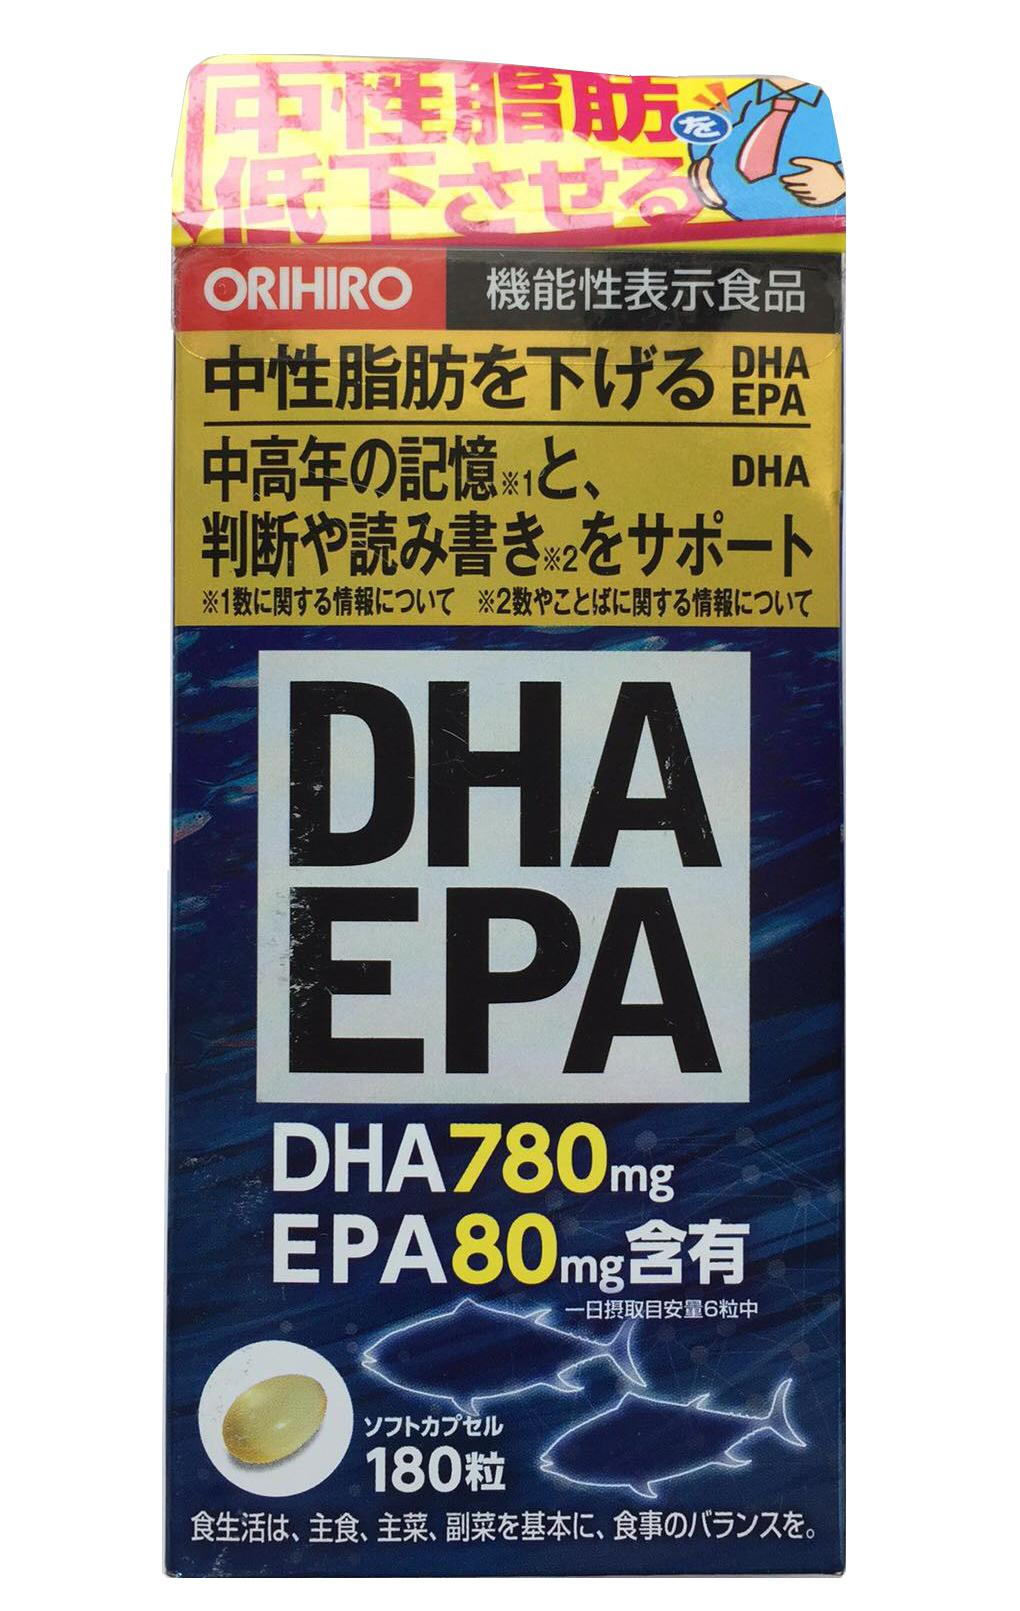 Viên uống bổ não DHA EPA Orihiro Nhật Bản